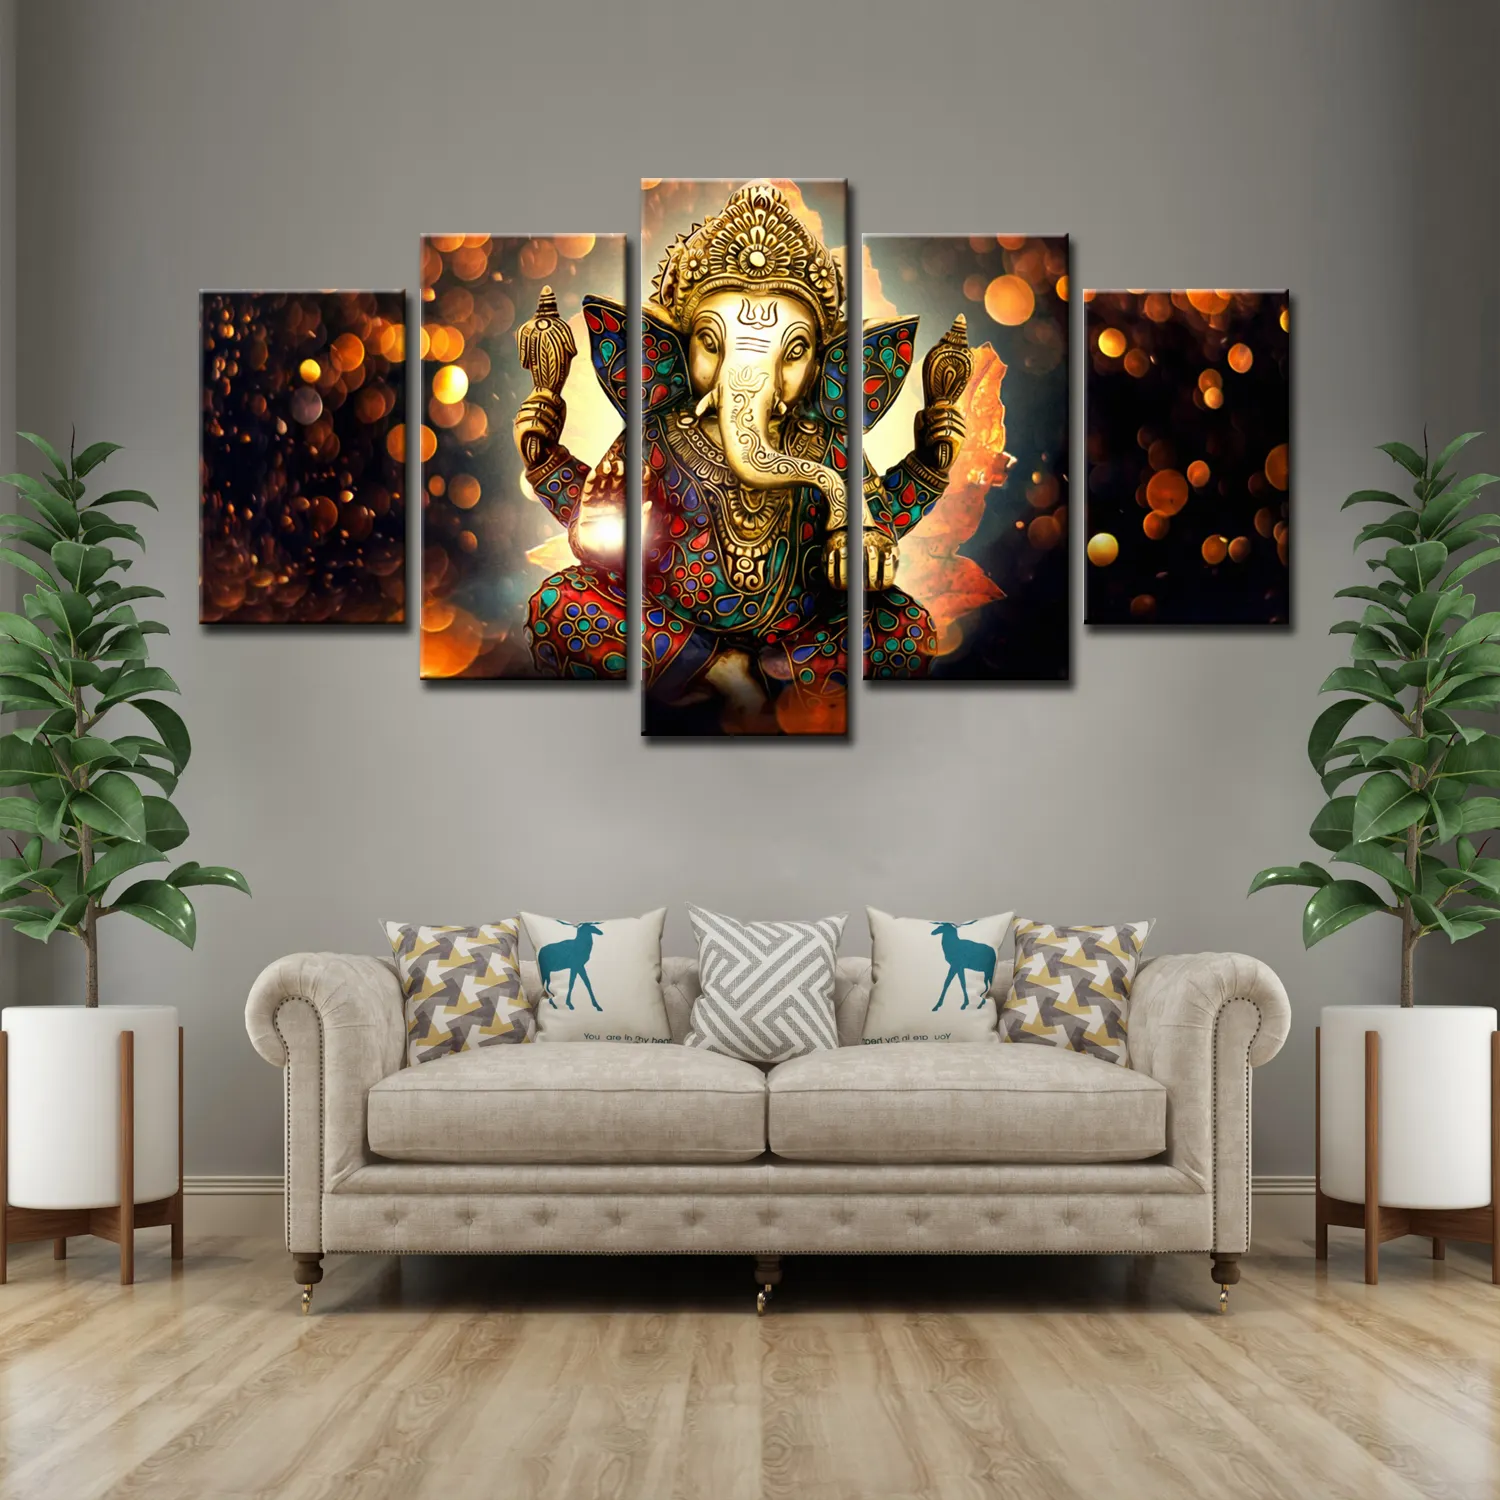 Lord Ganesha 5 pannelli indiano religioso dio naso elefante olio su tela pittura Wall Art Picture